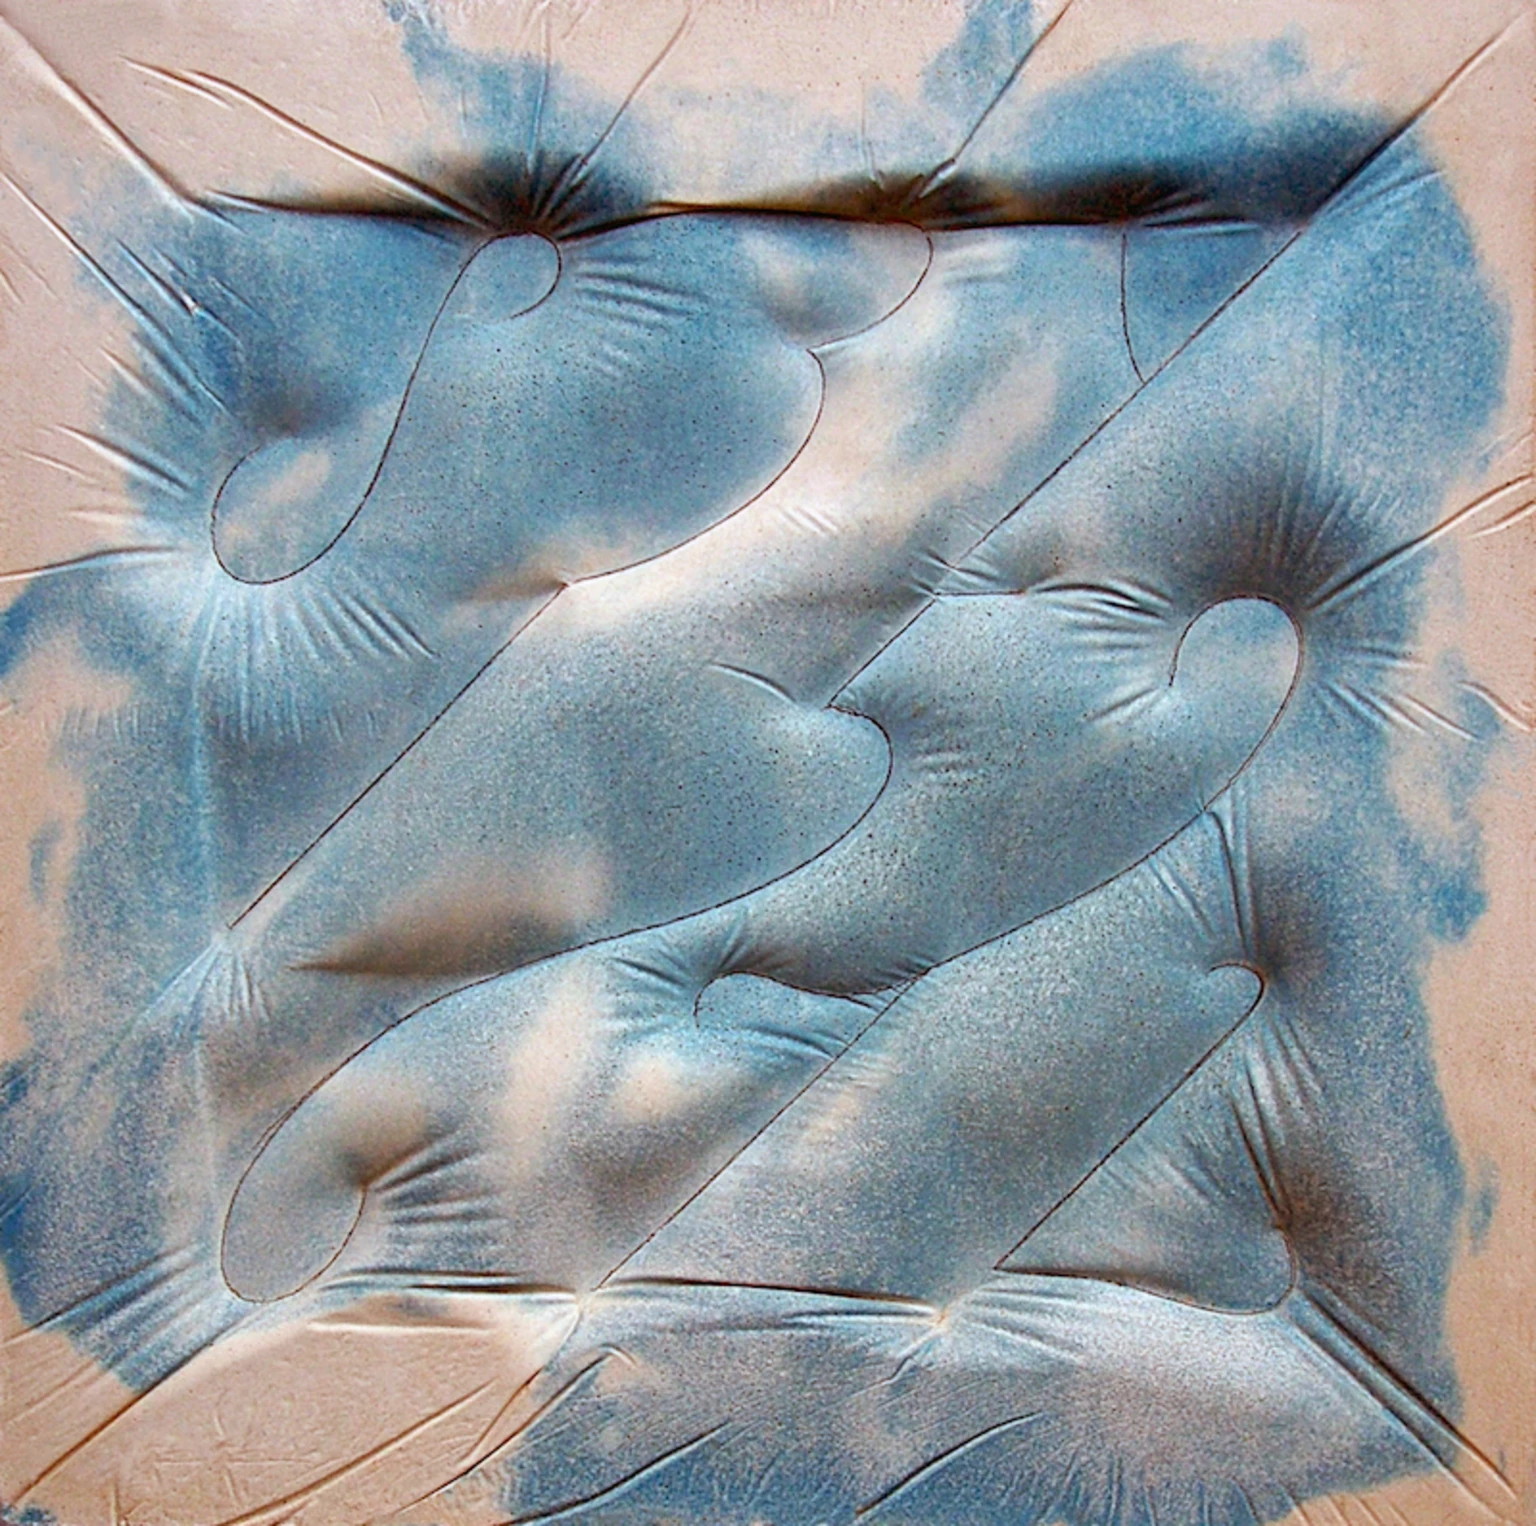 In Blue, 1995 - colored concrete, 50 x 50 cm